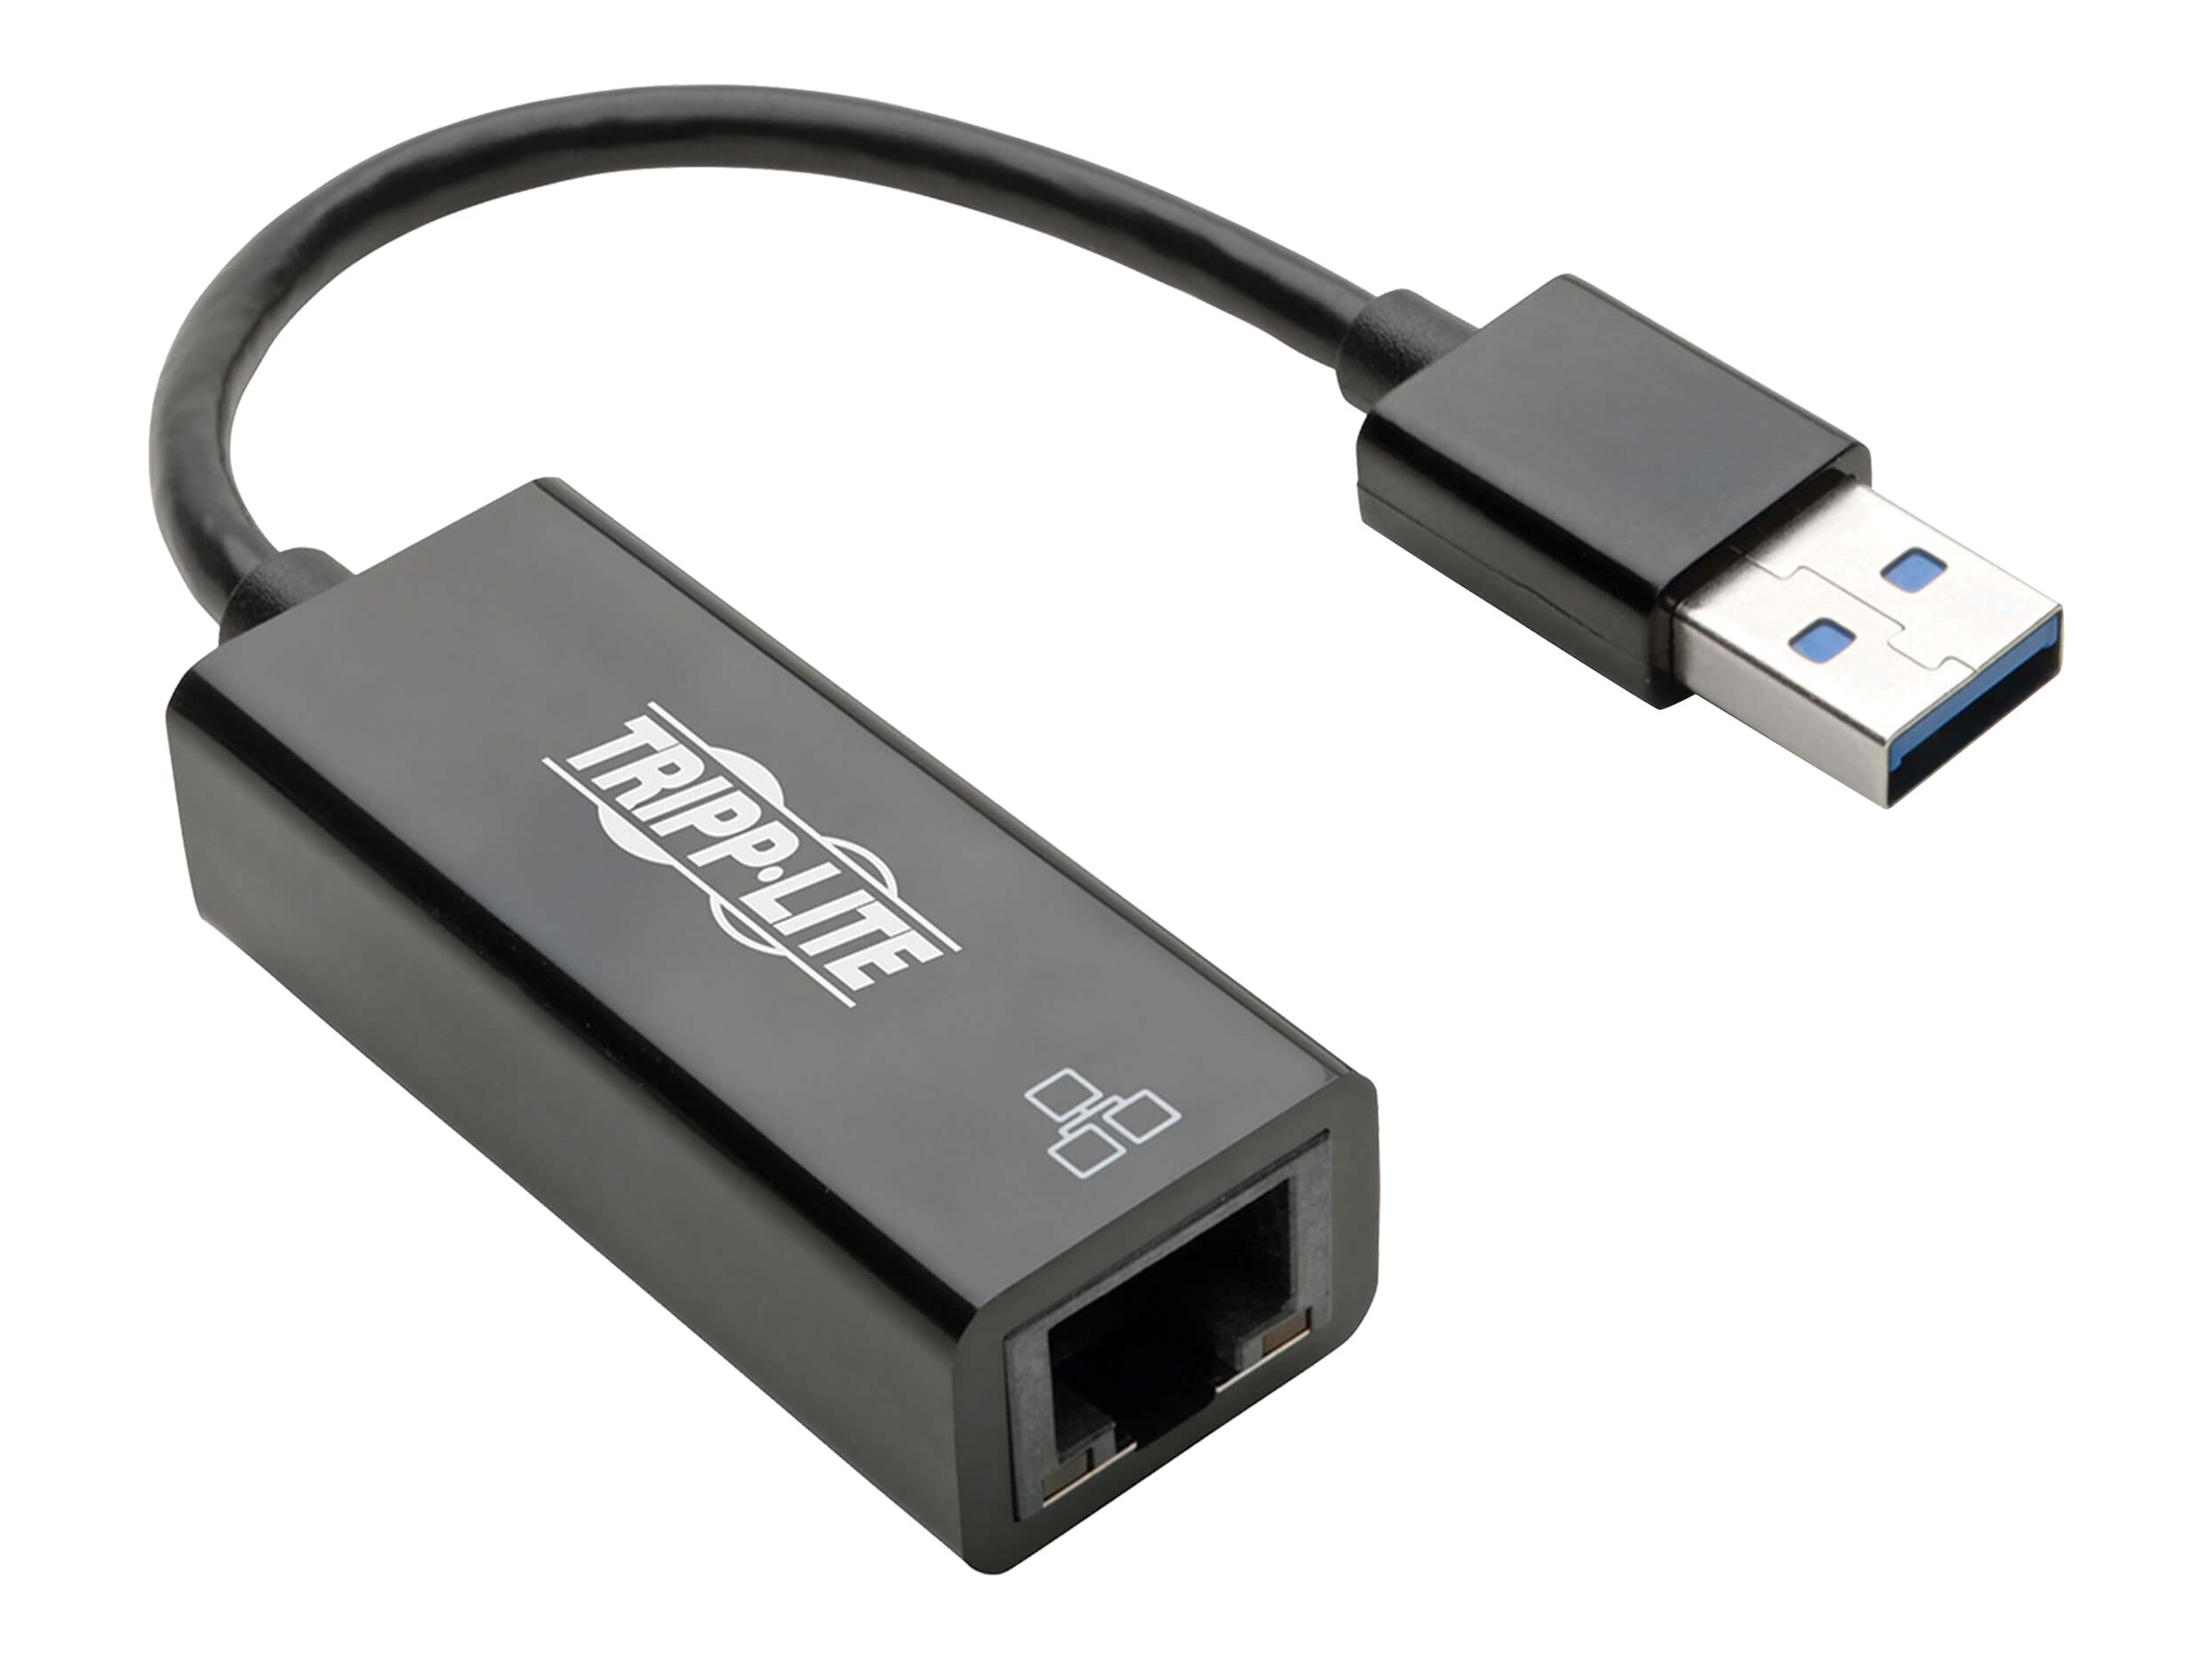 Tripp Lite USB 3.0 SuperSpeed to Gigabit Ethernet Adapter RJ45 10/100/1000 Mbps - Netzwerkadapter - USB 3.0 - Gigabit Ethernet -